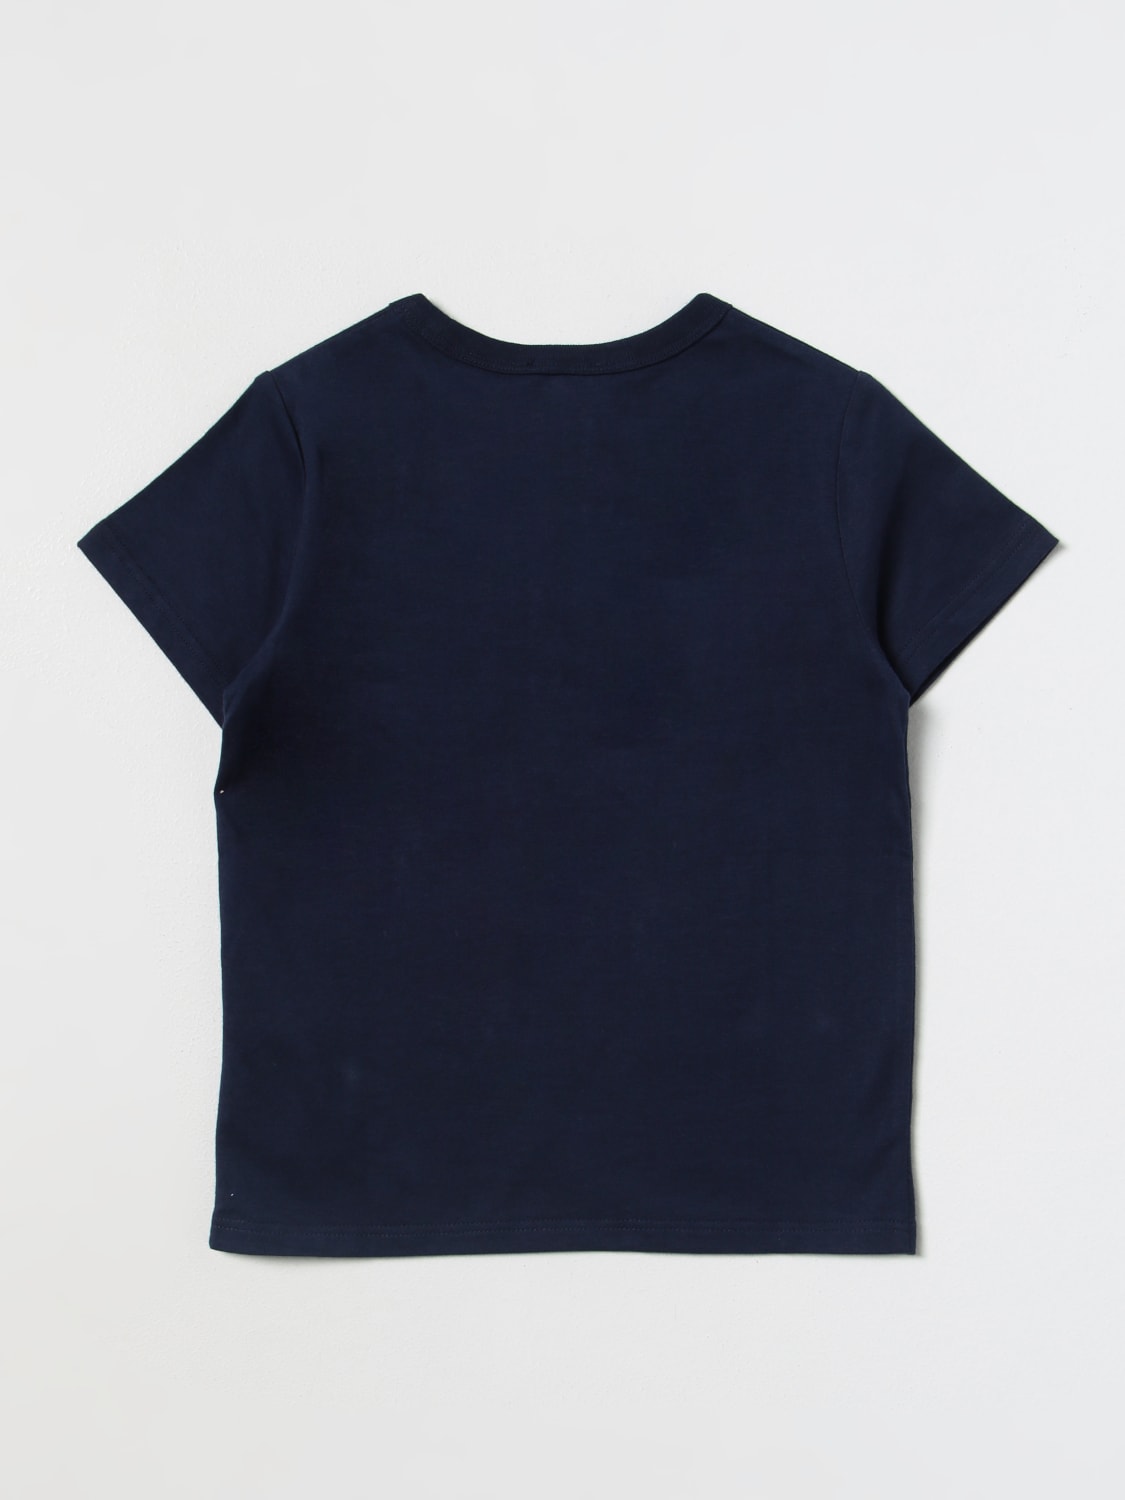 LITTLE MARC JACOBS: t-shirt for boys - Blue | Little Marc Jacobs t ...